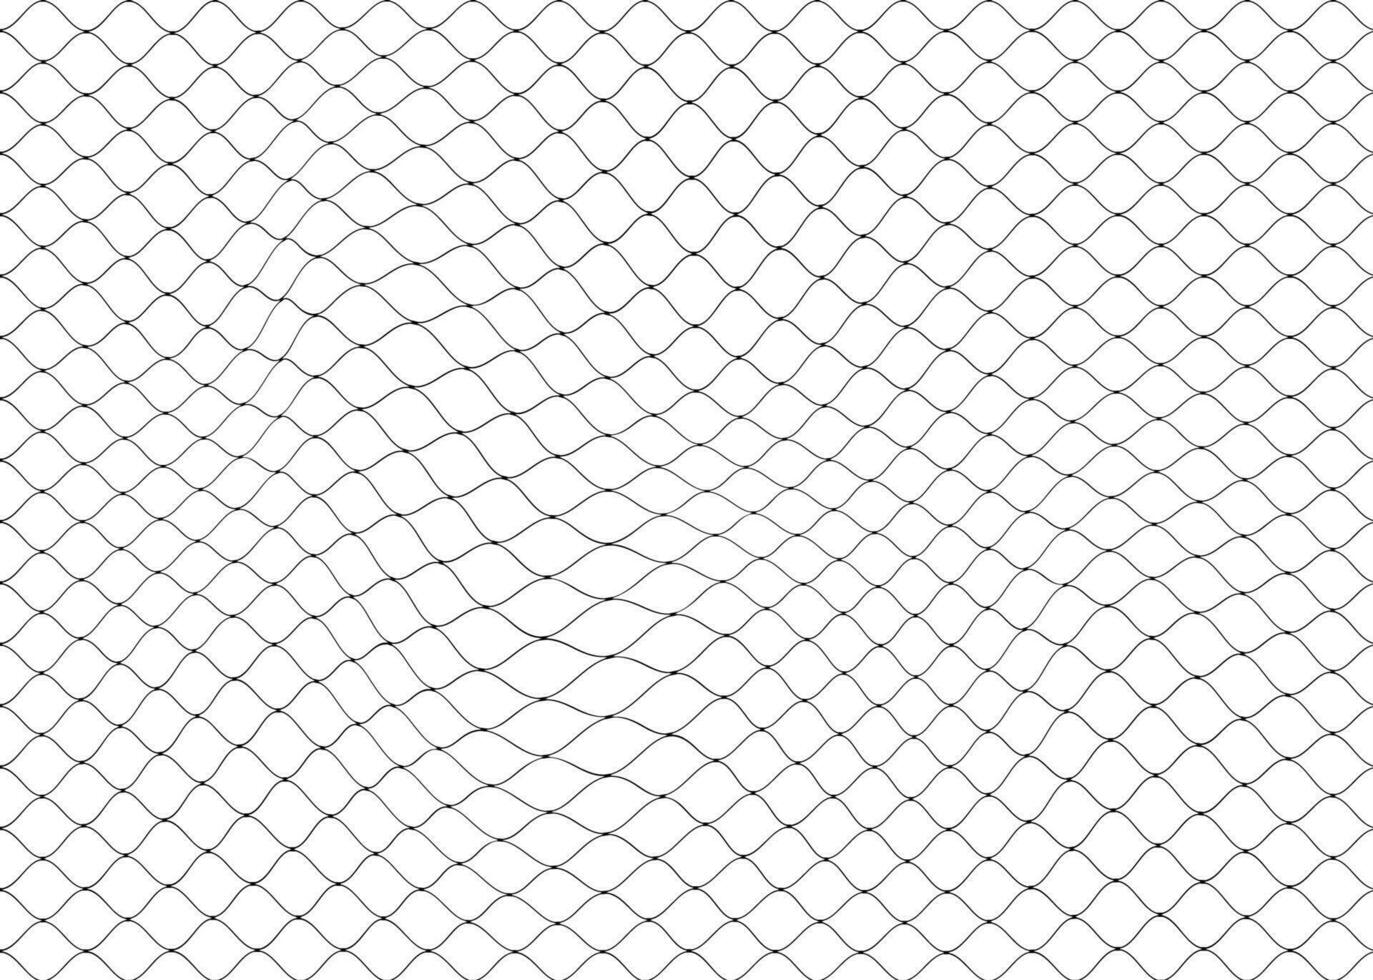 Fishnet seamless pattern, soccer net background vector